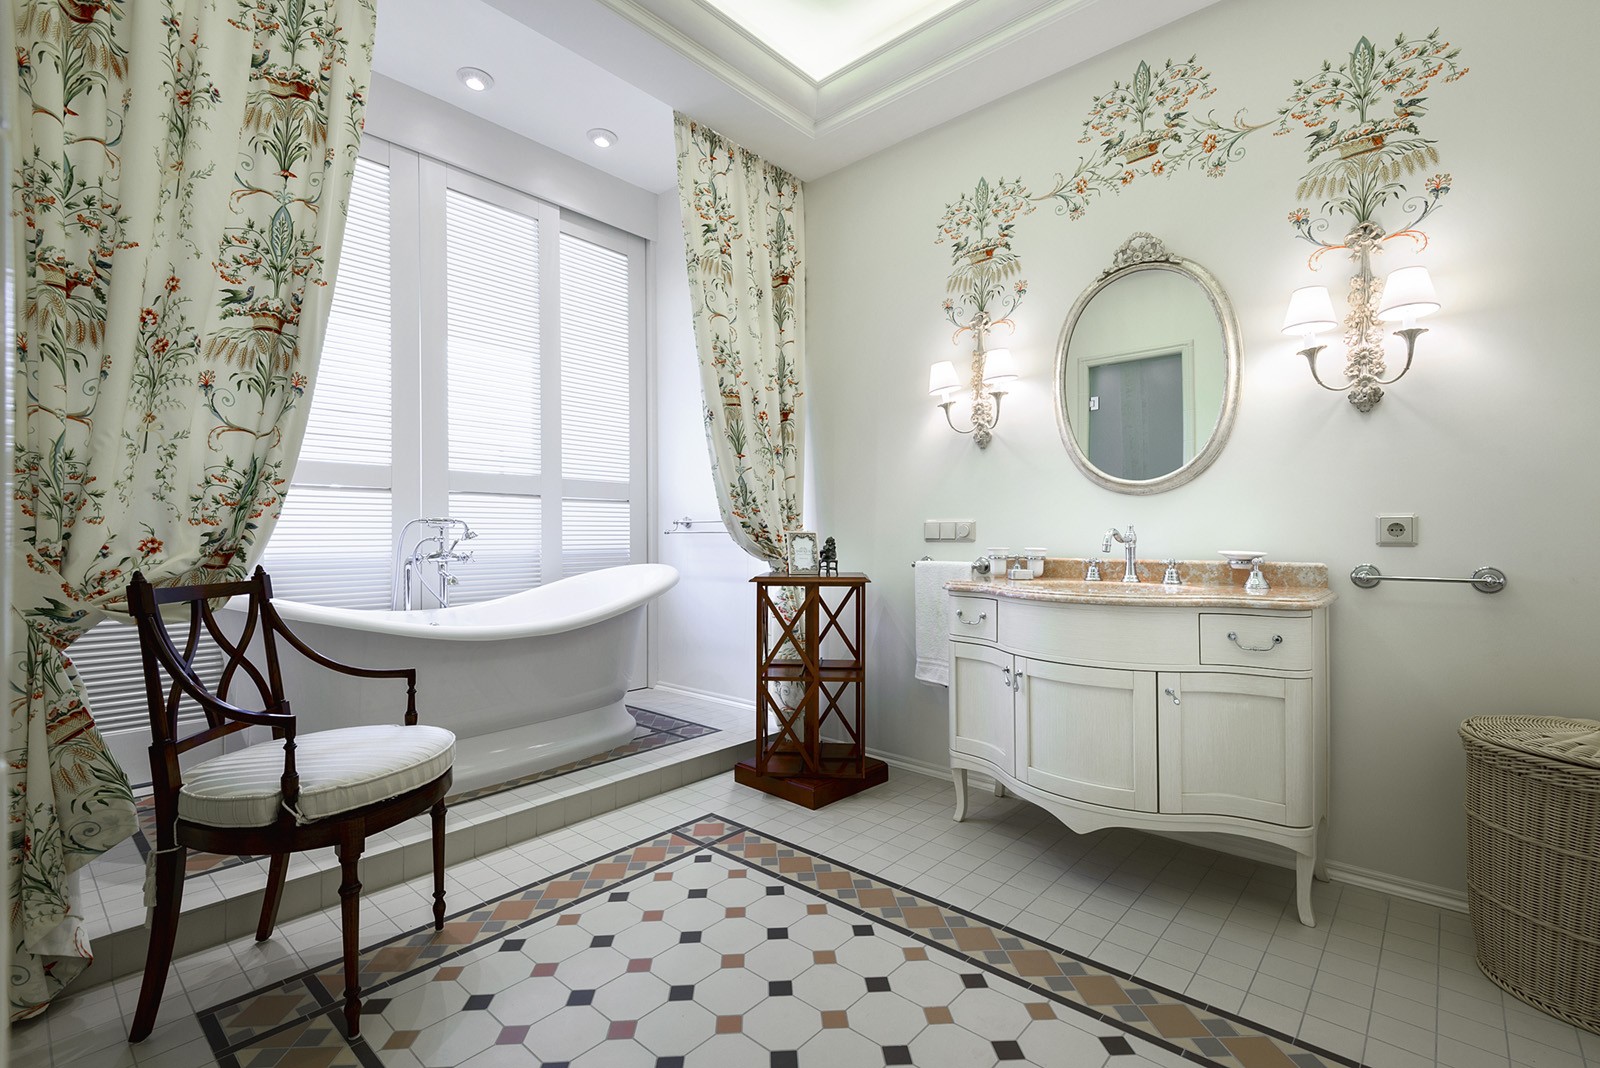 Дизайн ванной комнаты в скандинавском стиле (фото) – идеи интерьера